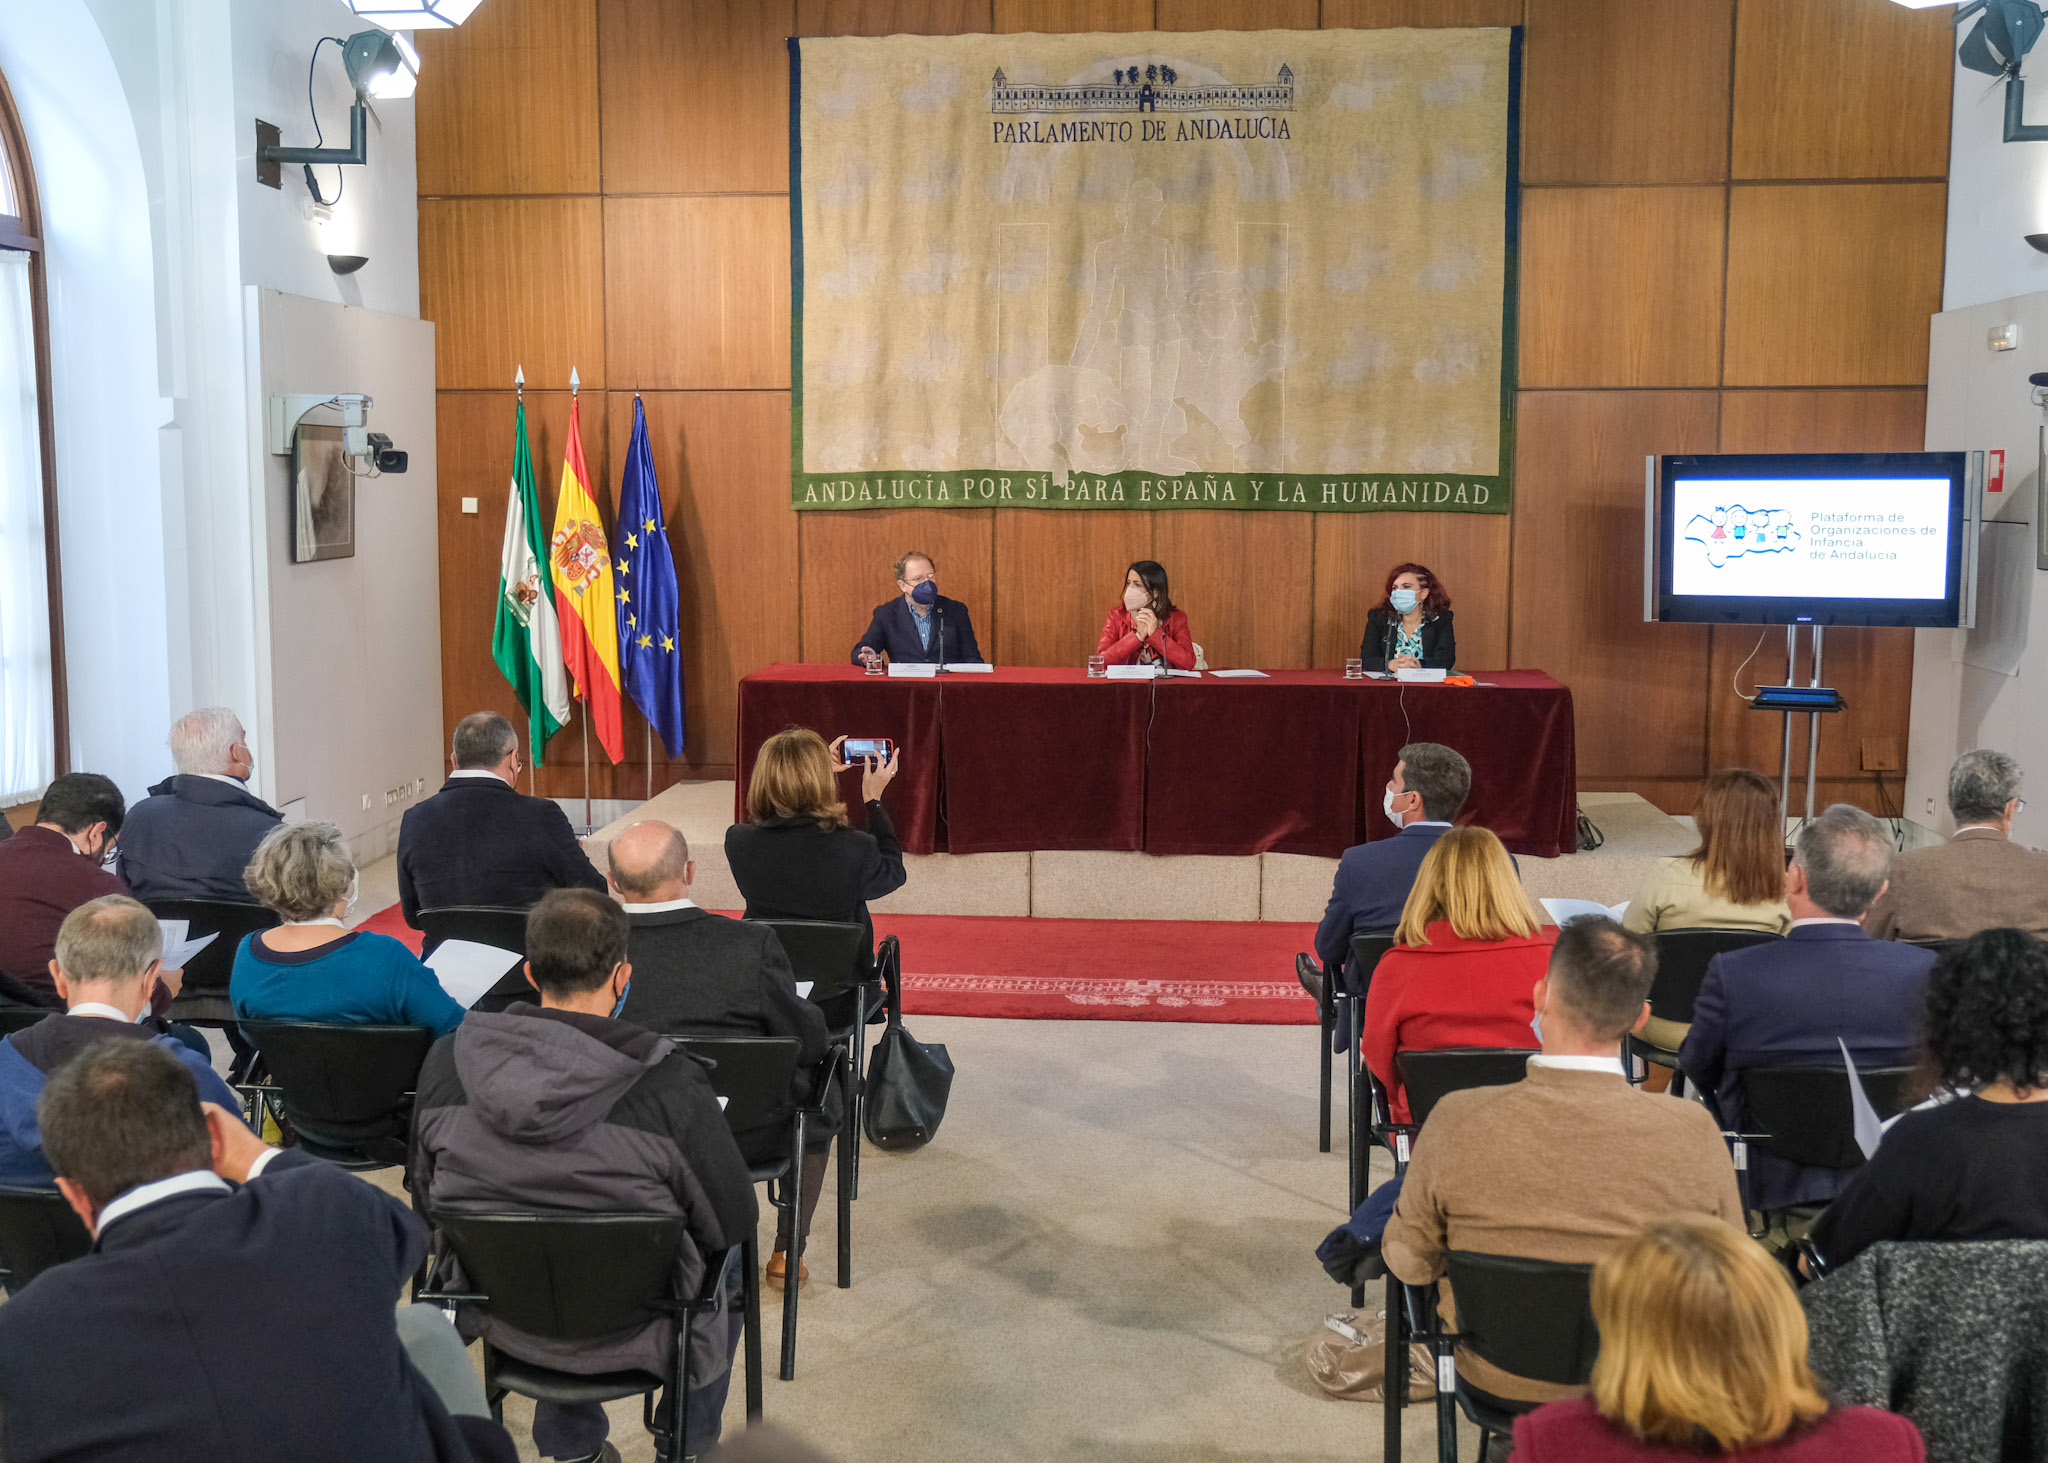     La presidenta del Parlamento de Andaluca, Marta Bosquet, con la Plataforma de Organizaciones de Infancia de Andaluca en el Saln de Usos Mltiples 